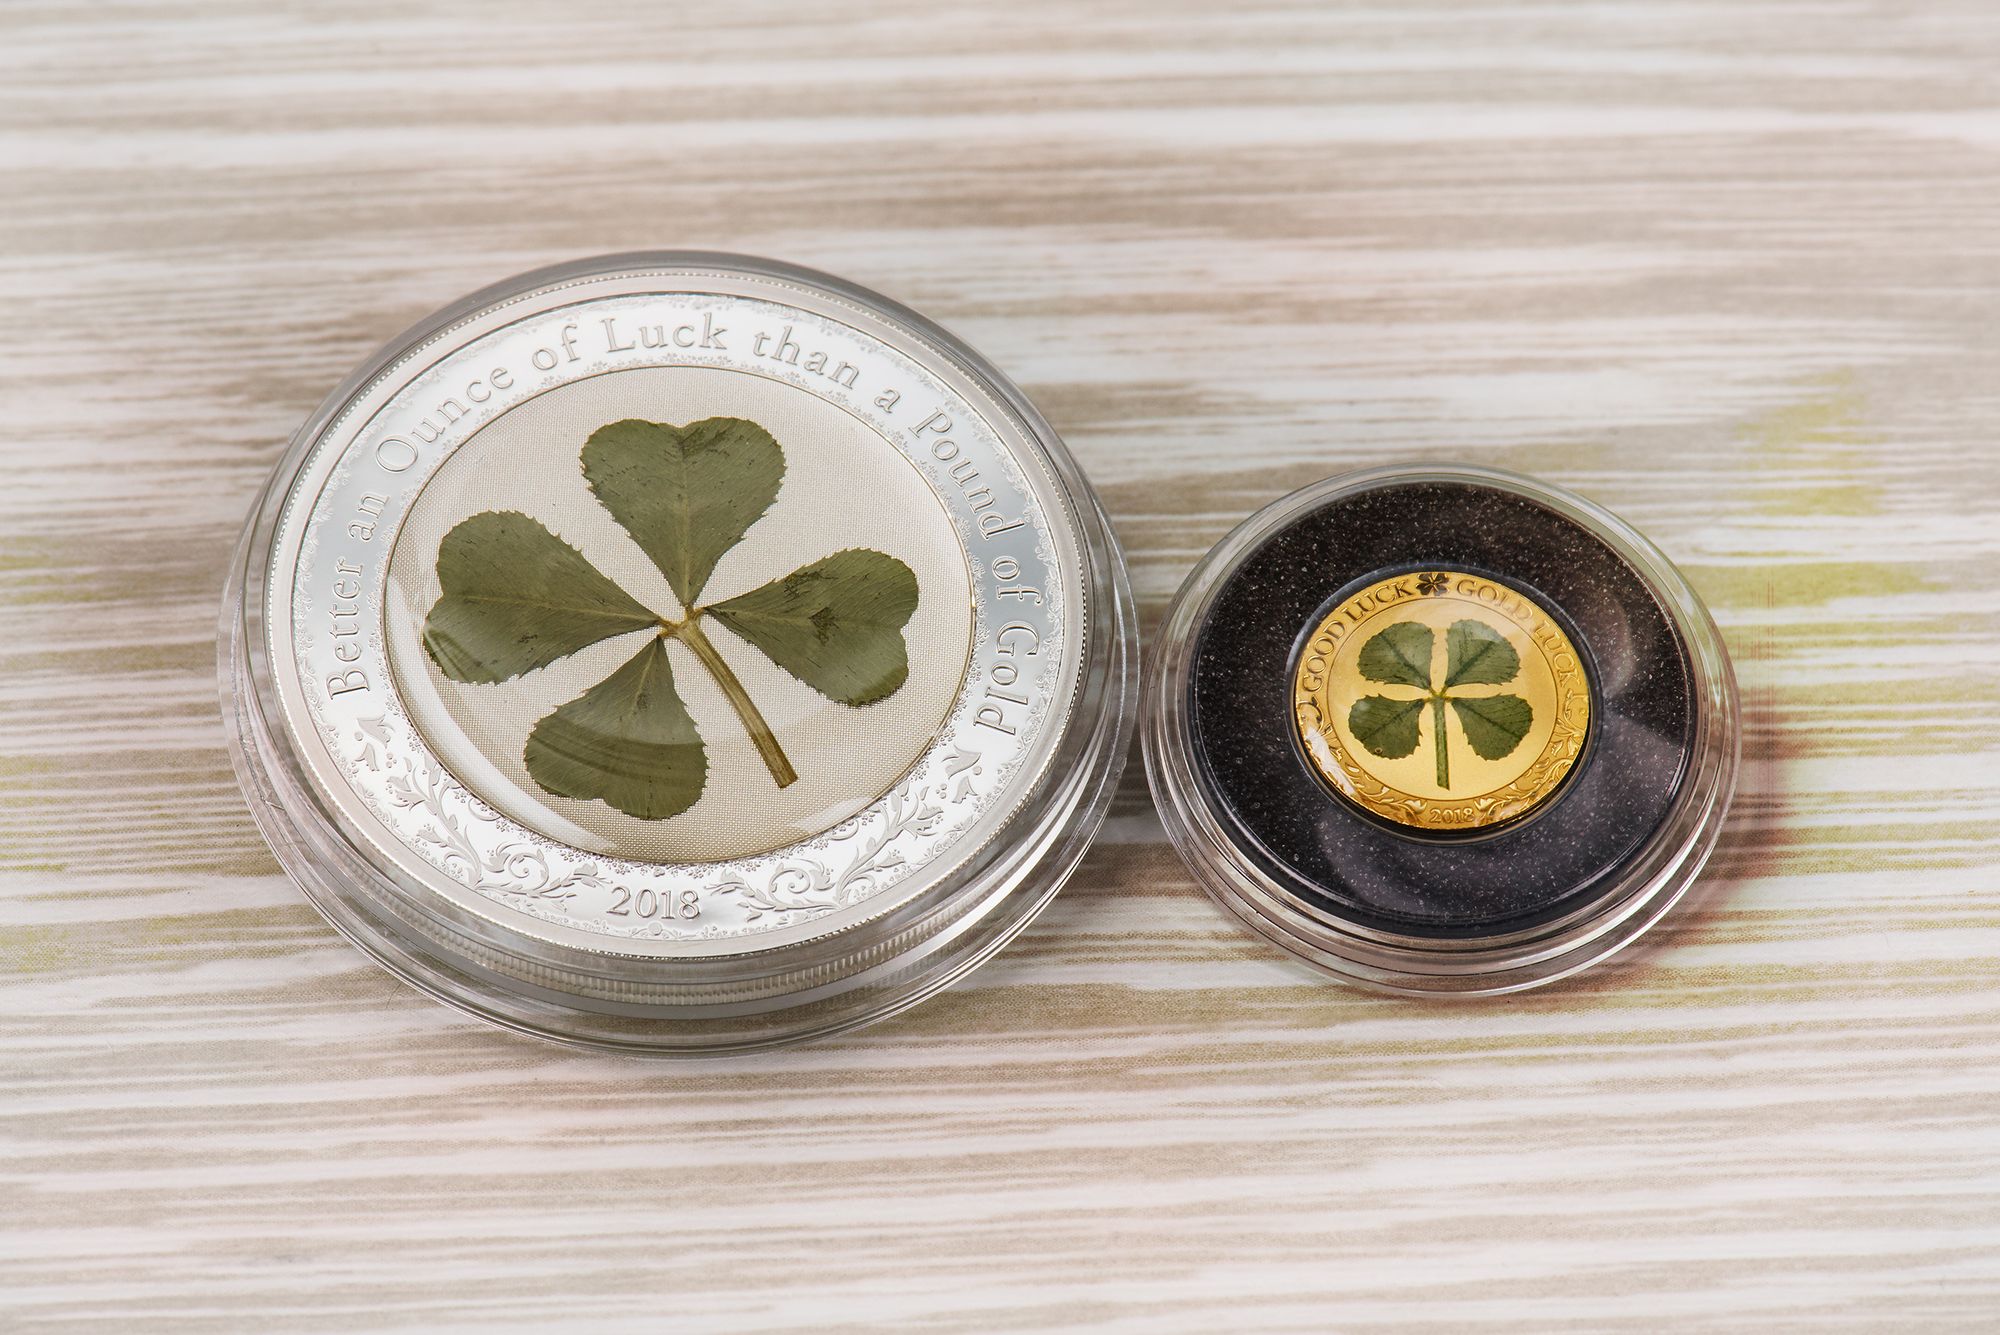 Four Leaf Clovers Ounce of Luck 2018 Coins